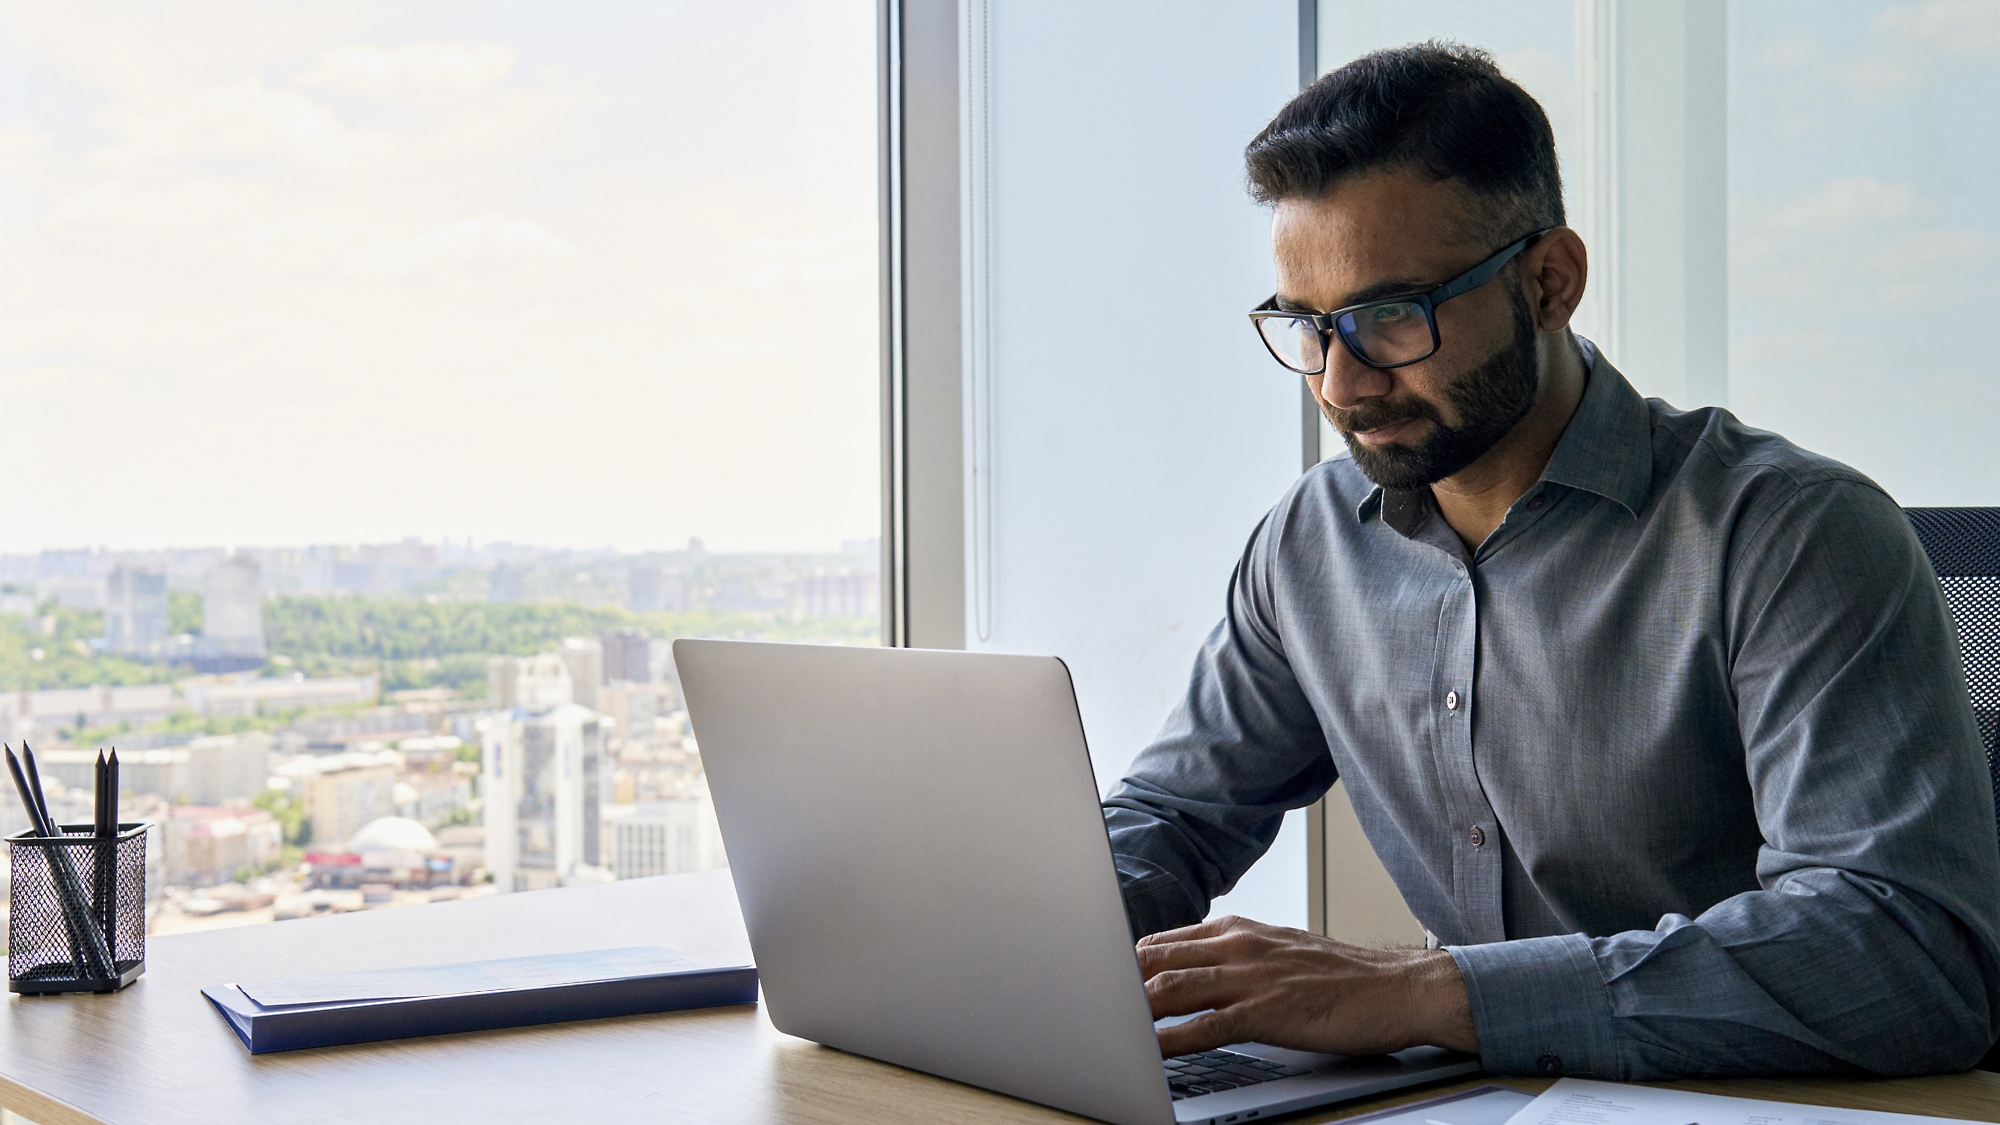 Egy szemüveges férfi elmélyülten dolgozik egy laptopon egy ablak melletti íróasztalnál, ahonnan kilátás nyílik a városra.